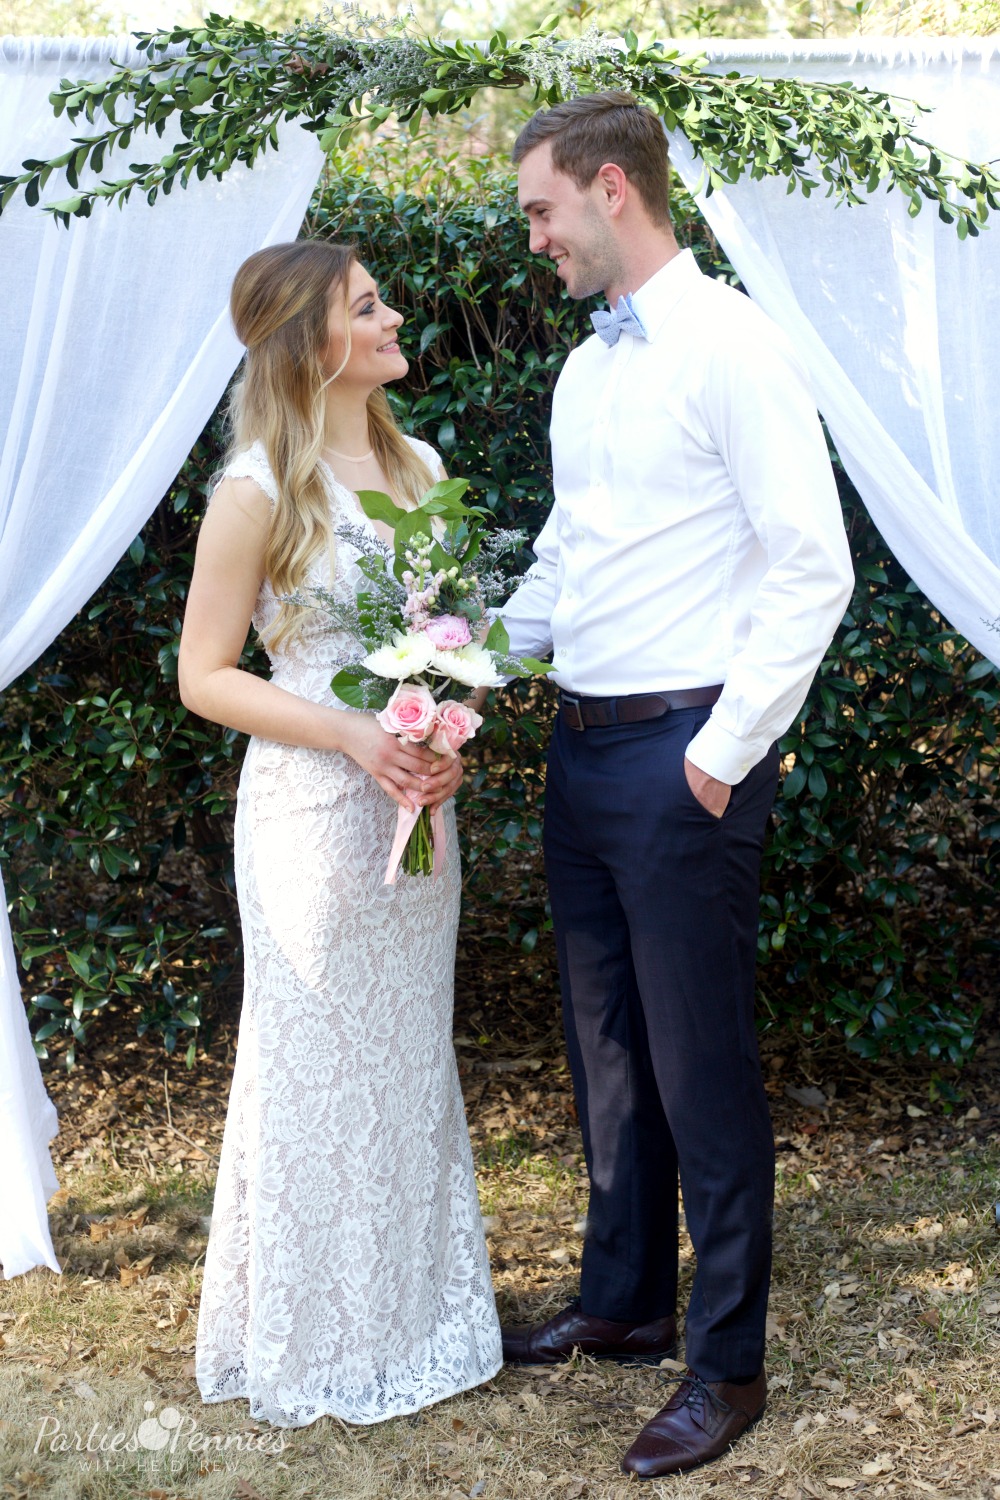 How to Plan a Wedding for under $5,000 | PartiesforPennies.com | Bride & Groom, Wedding Backdrop, DIY Wedding Backdrop